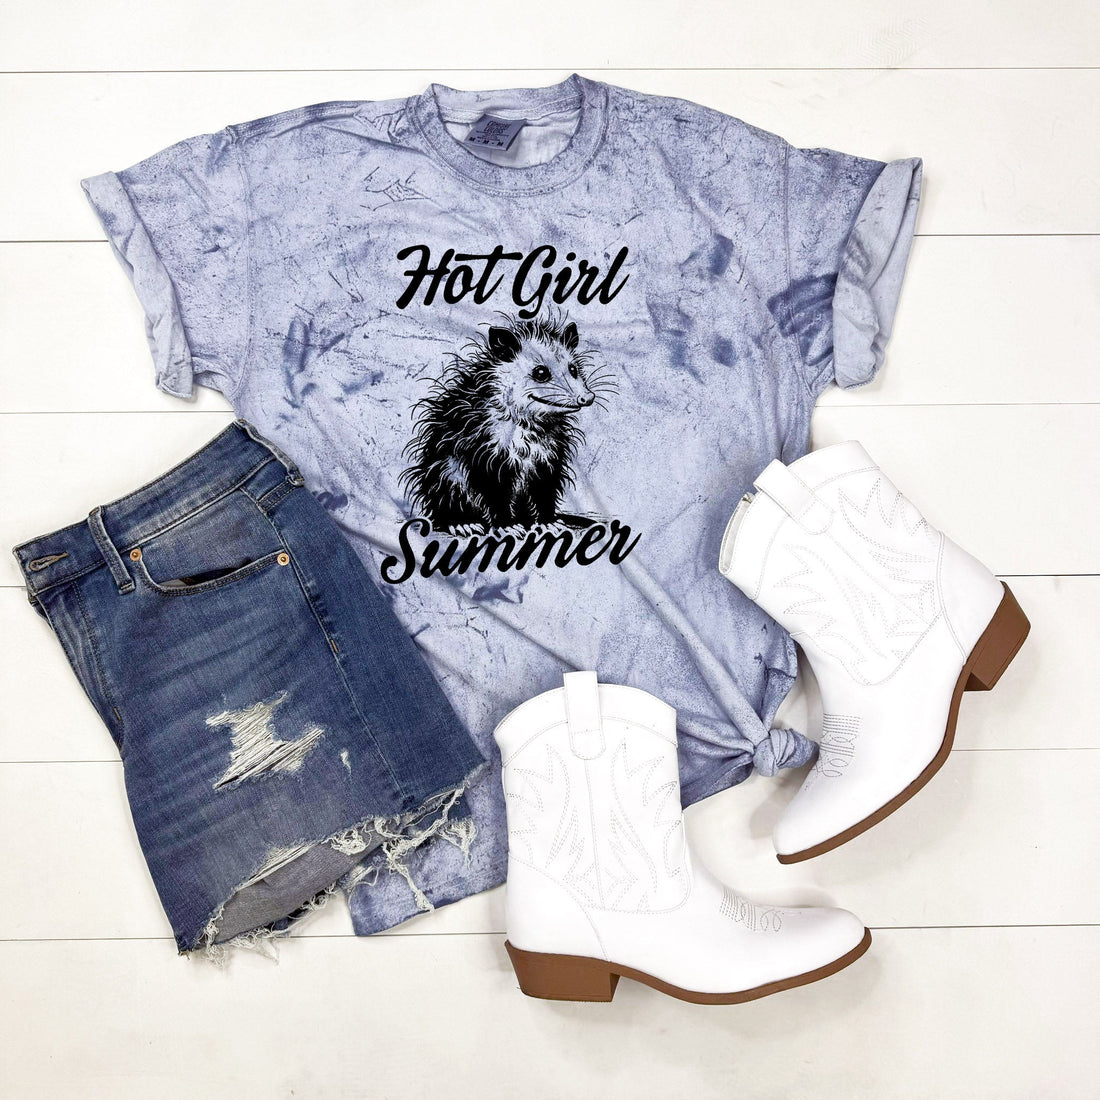 Hot Girl Summer Graphic Shirt